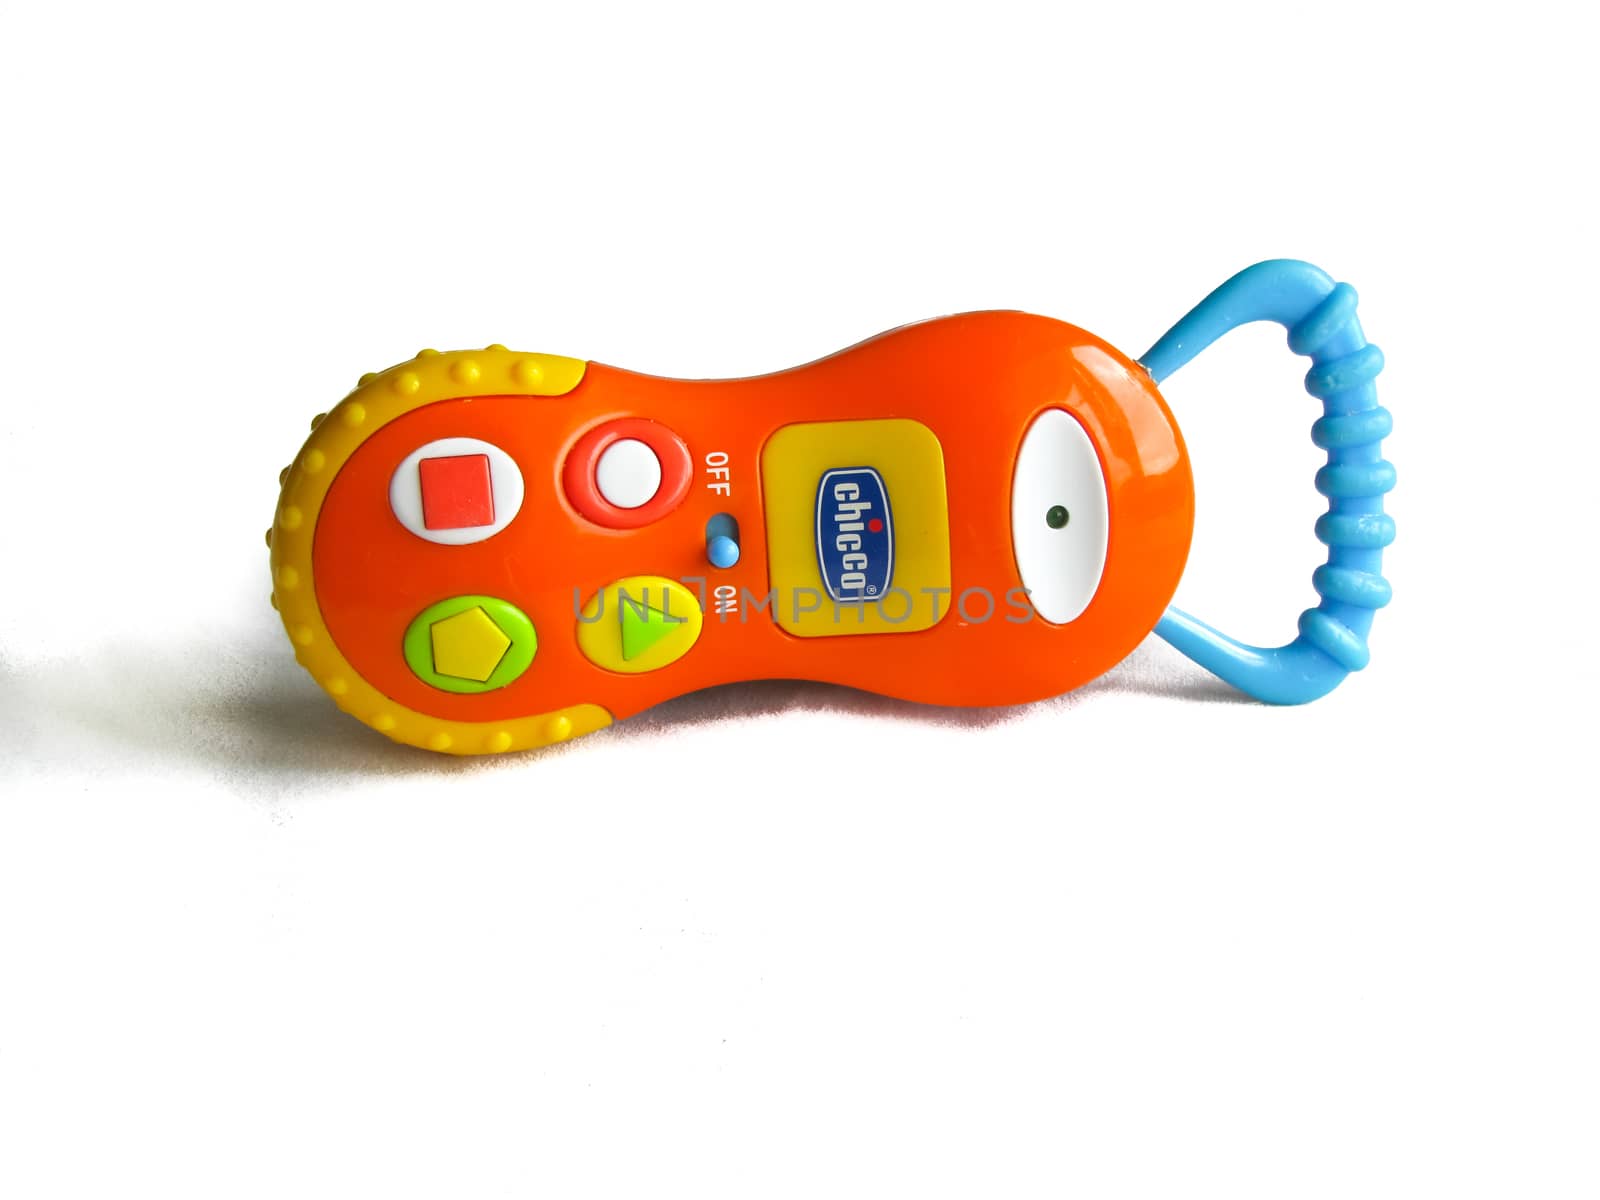 children's toy orange phone by rodakm